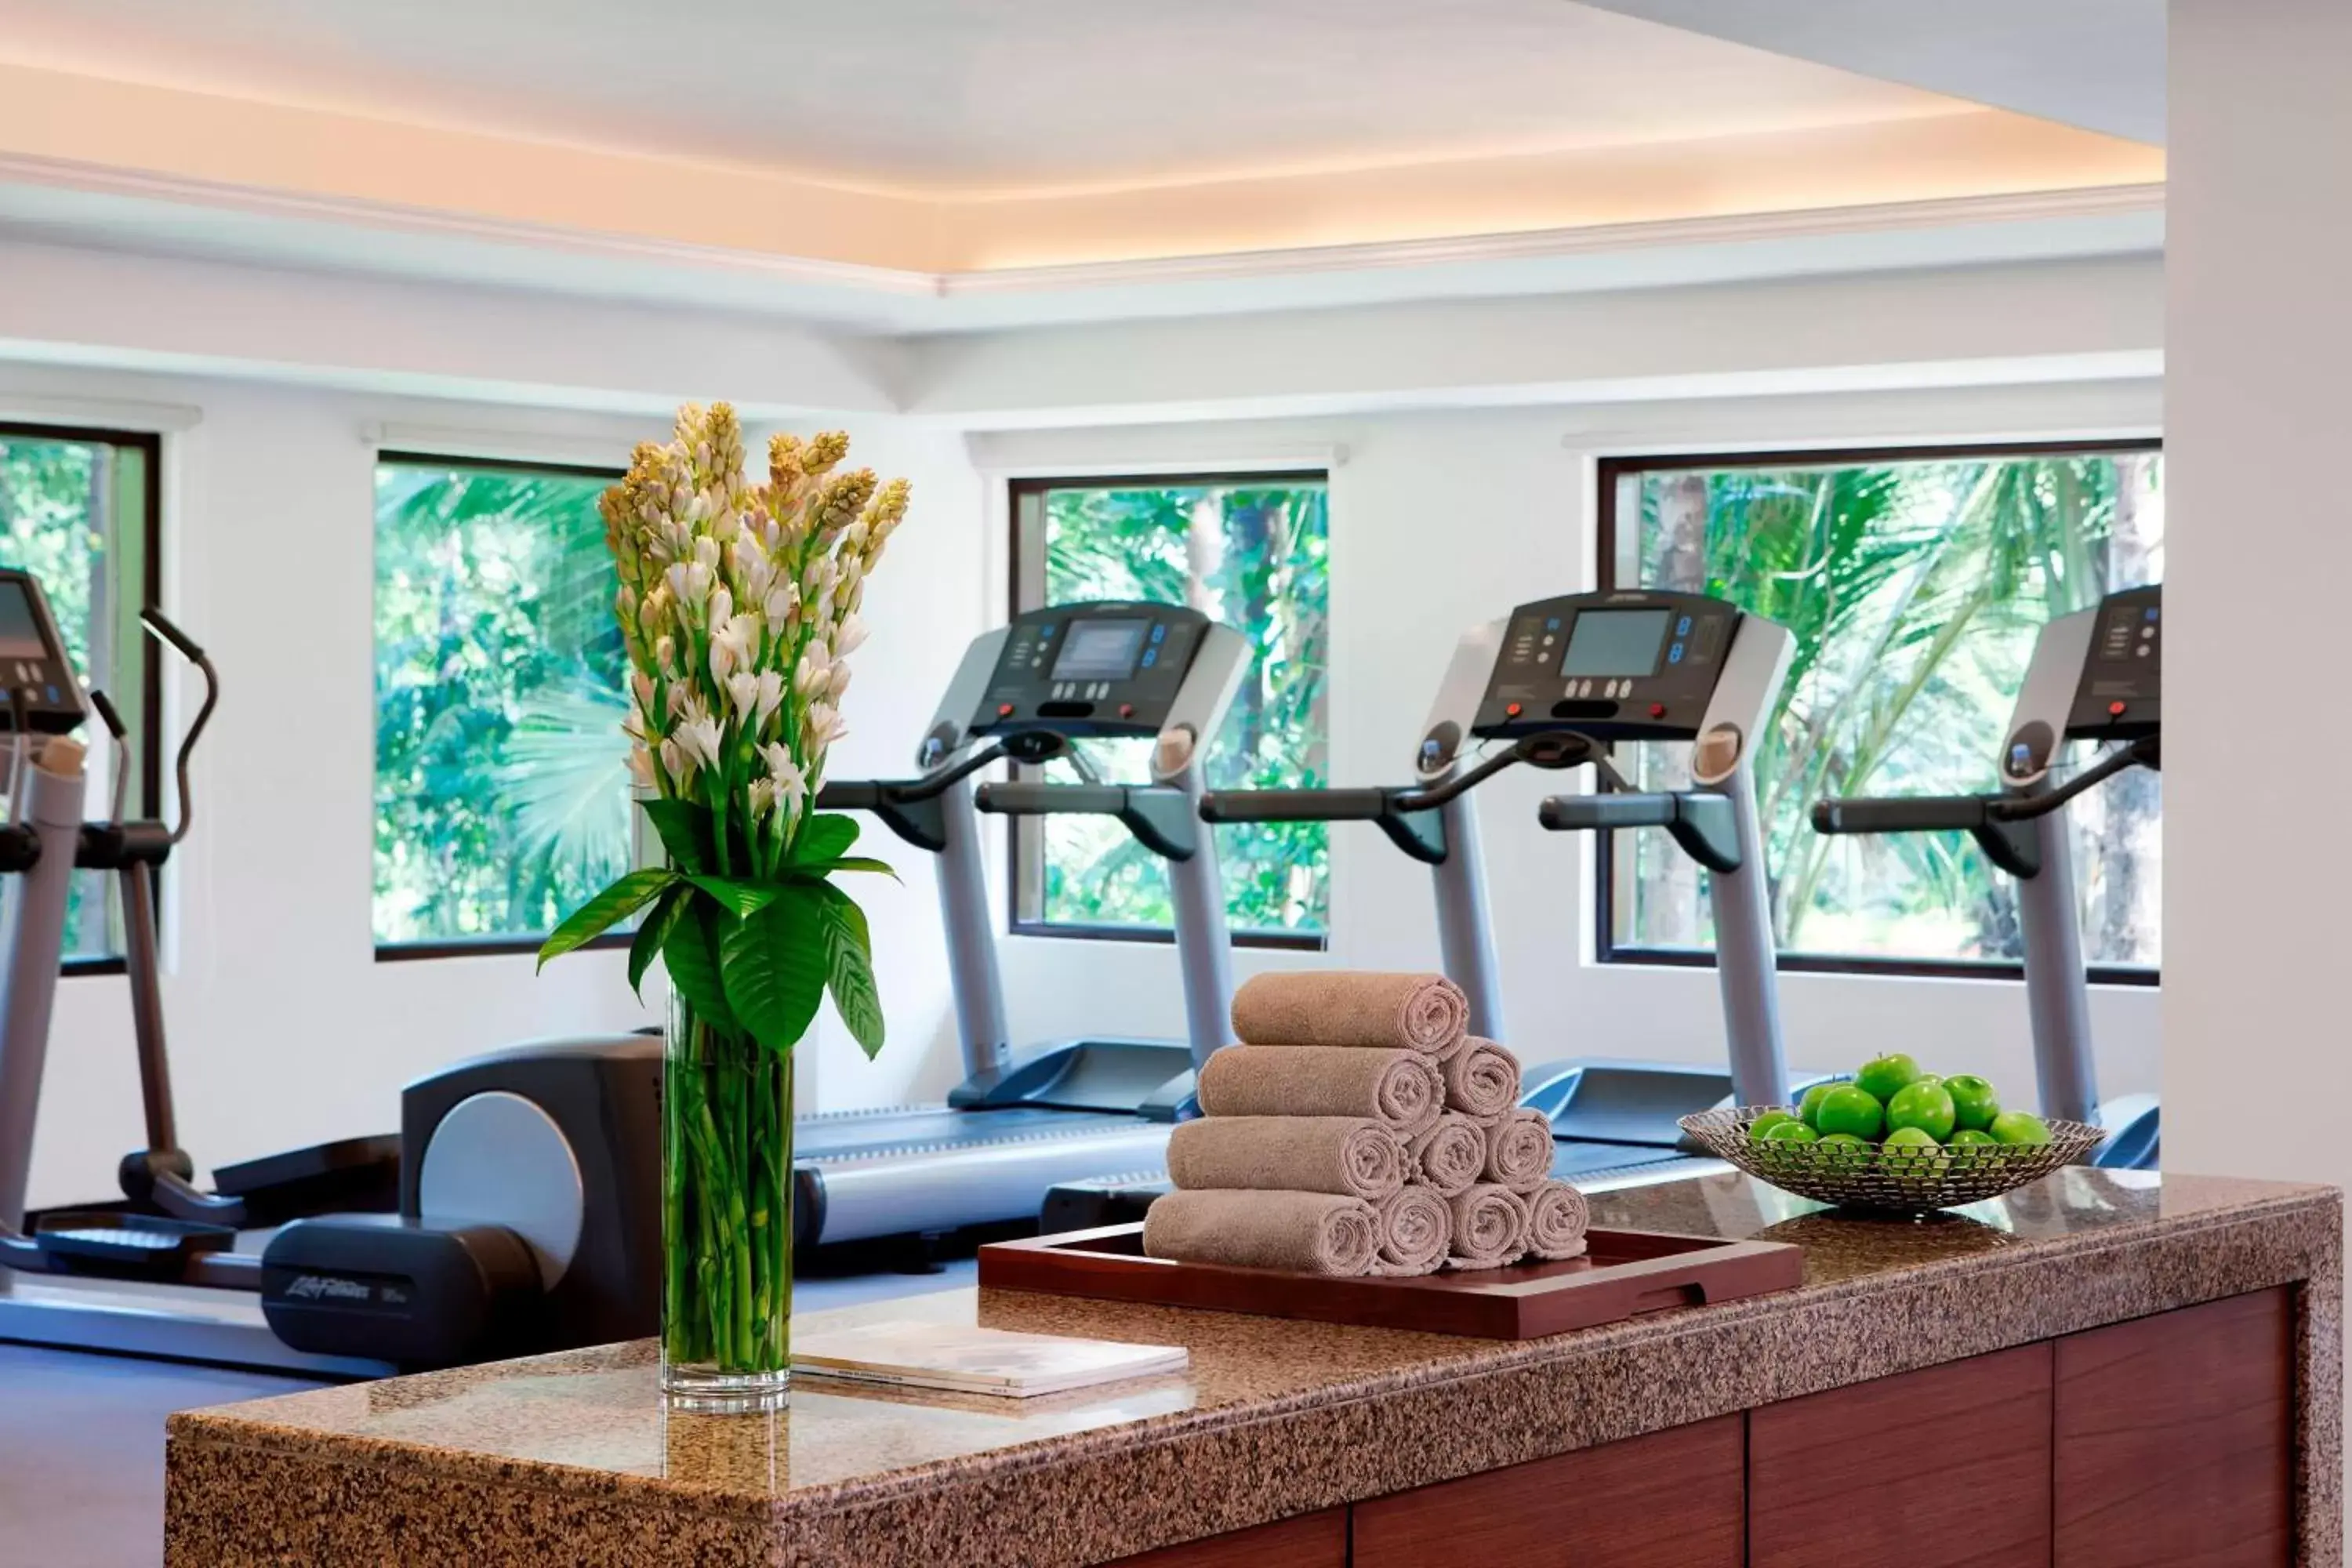 Fitness centre/facilities, Fitness Center/Facilities in Goa Marriott Resort & Spa